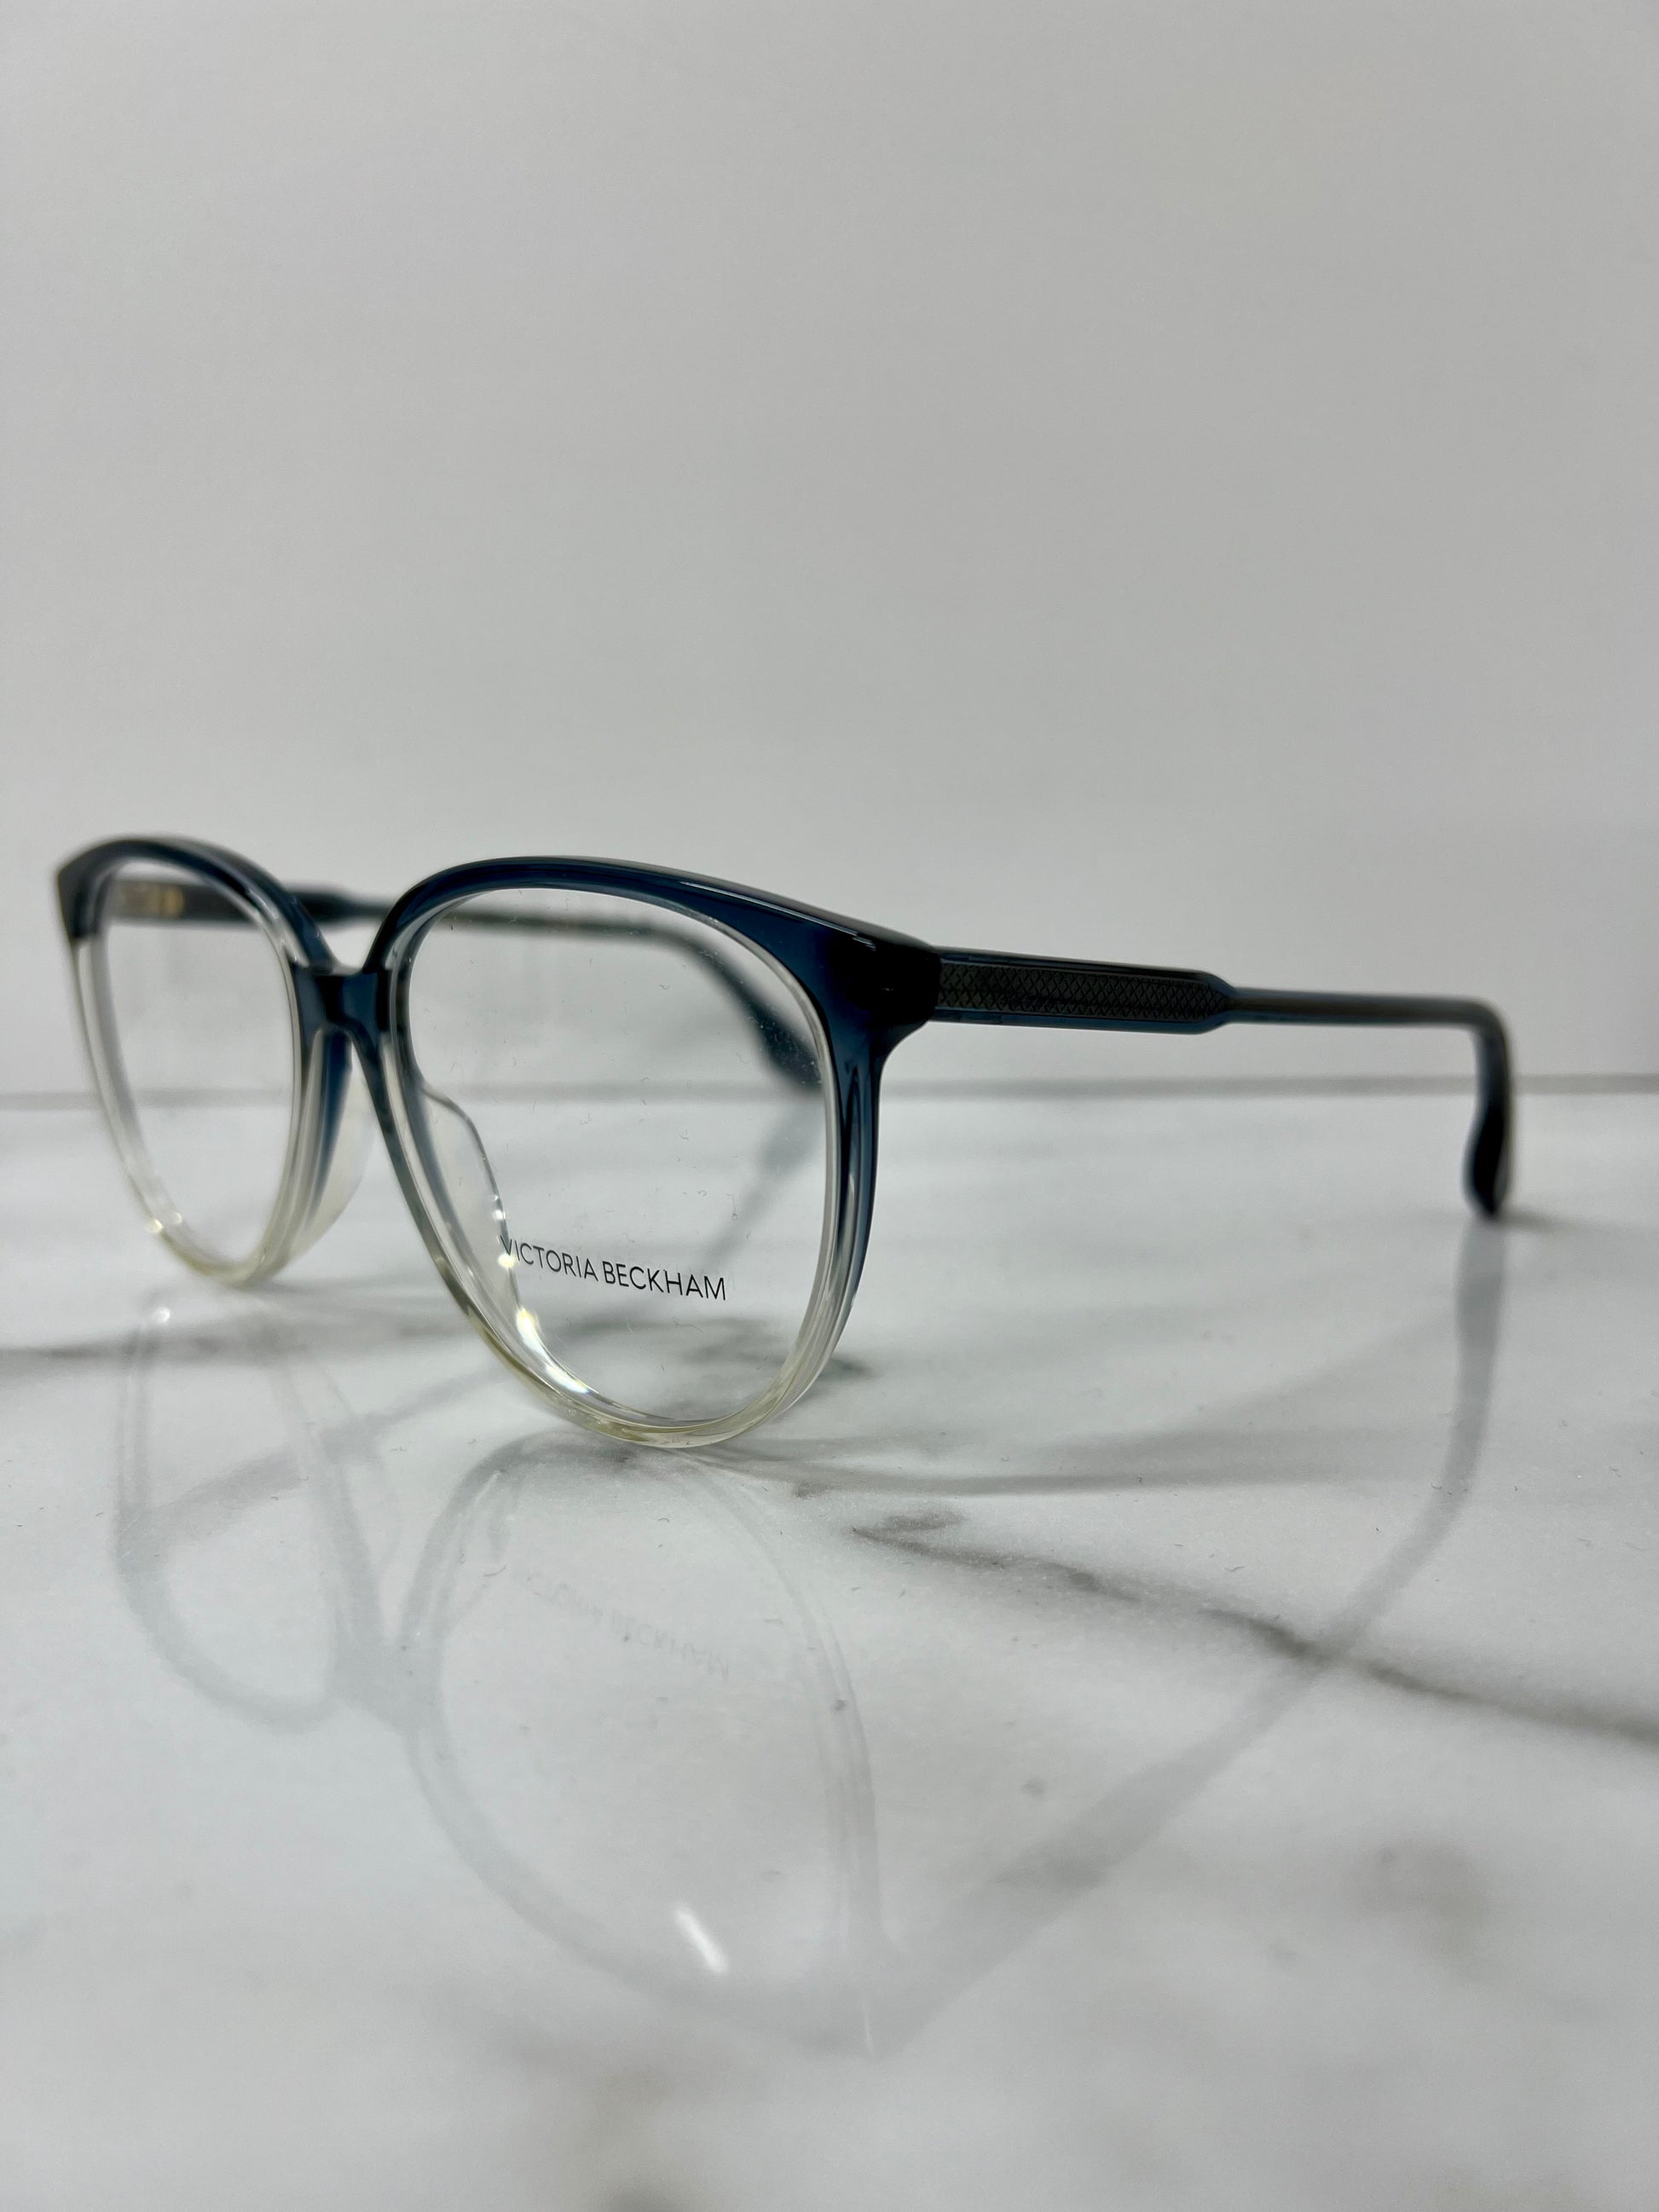 Victoria Beckham Glasses Frames Optical Blue Clear Acetate Eyeglasses VB2619